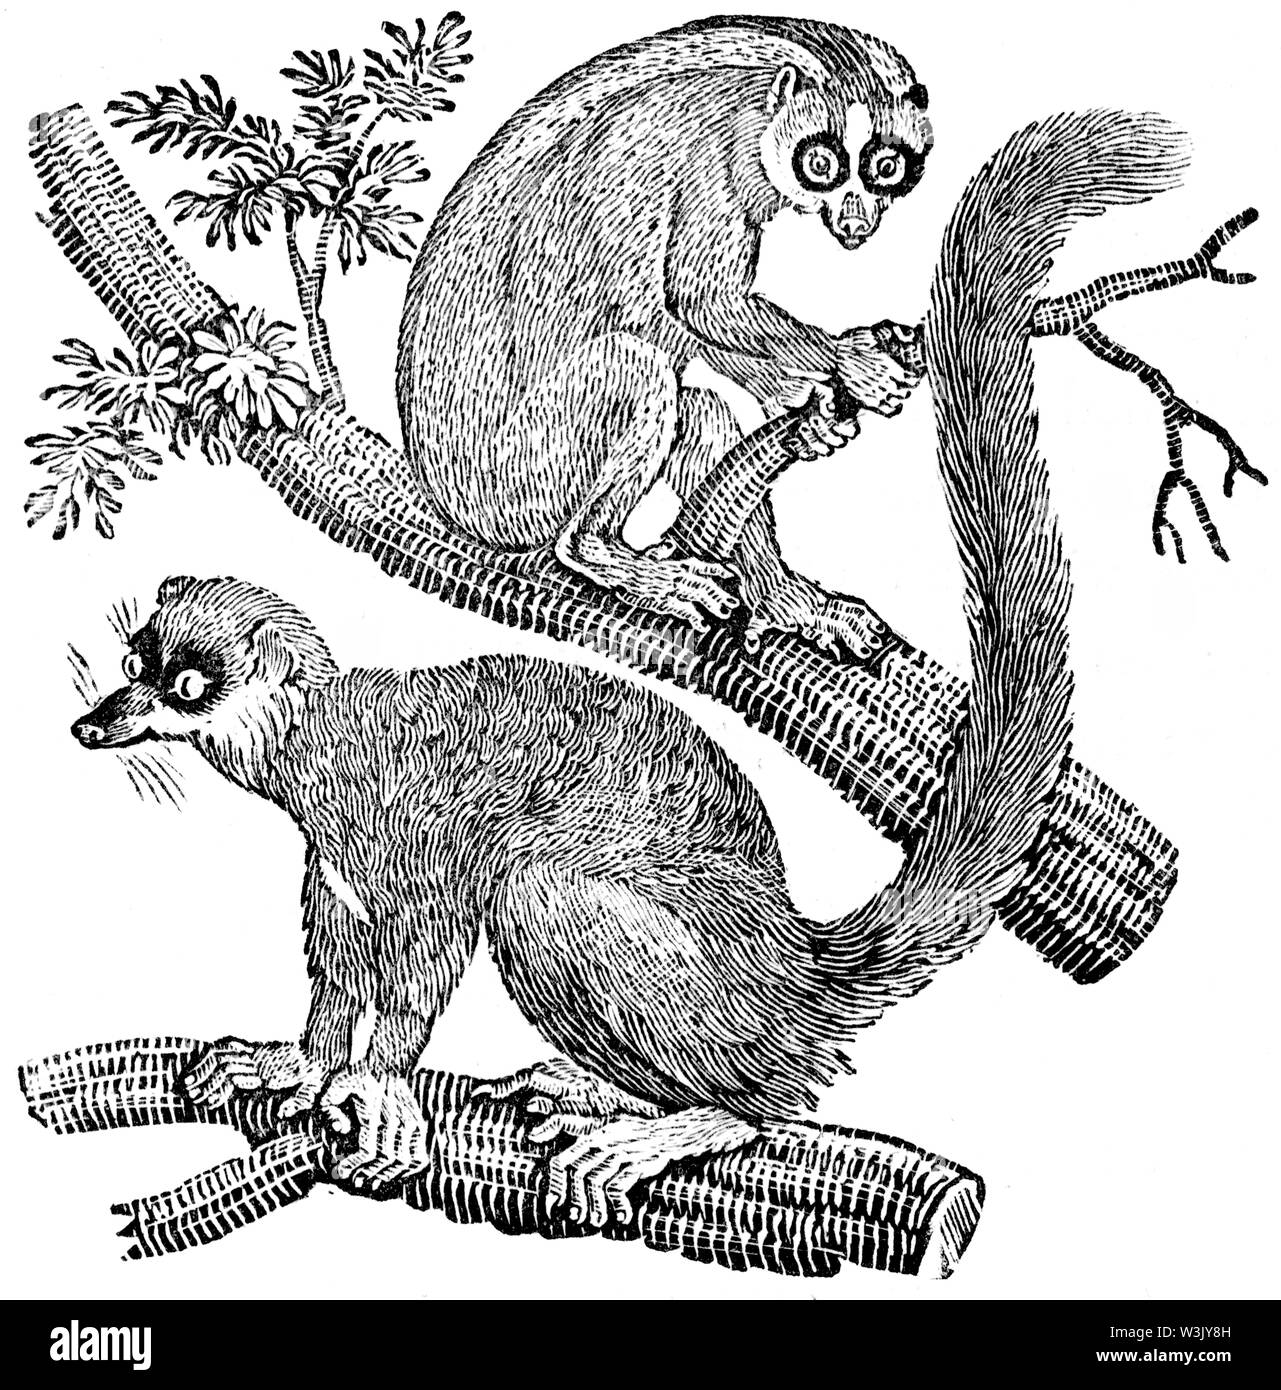 Couper du bois gravé, illustration tirée de 'Thomas Bewick 'une Histoire générale de quadrupèdes", publié par T. Bewick, Longman et Co. Imprimé par Edward Banque D'Images